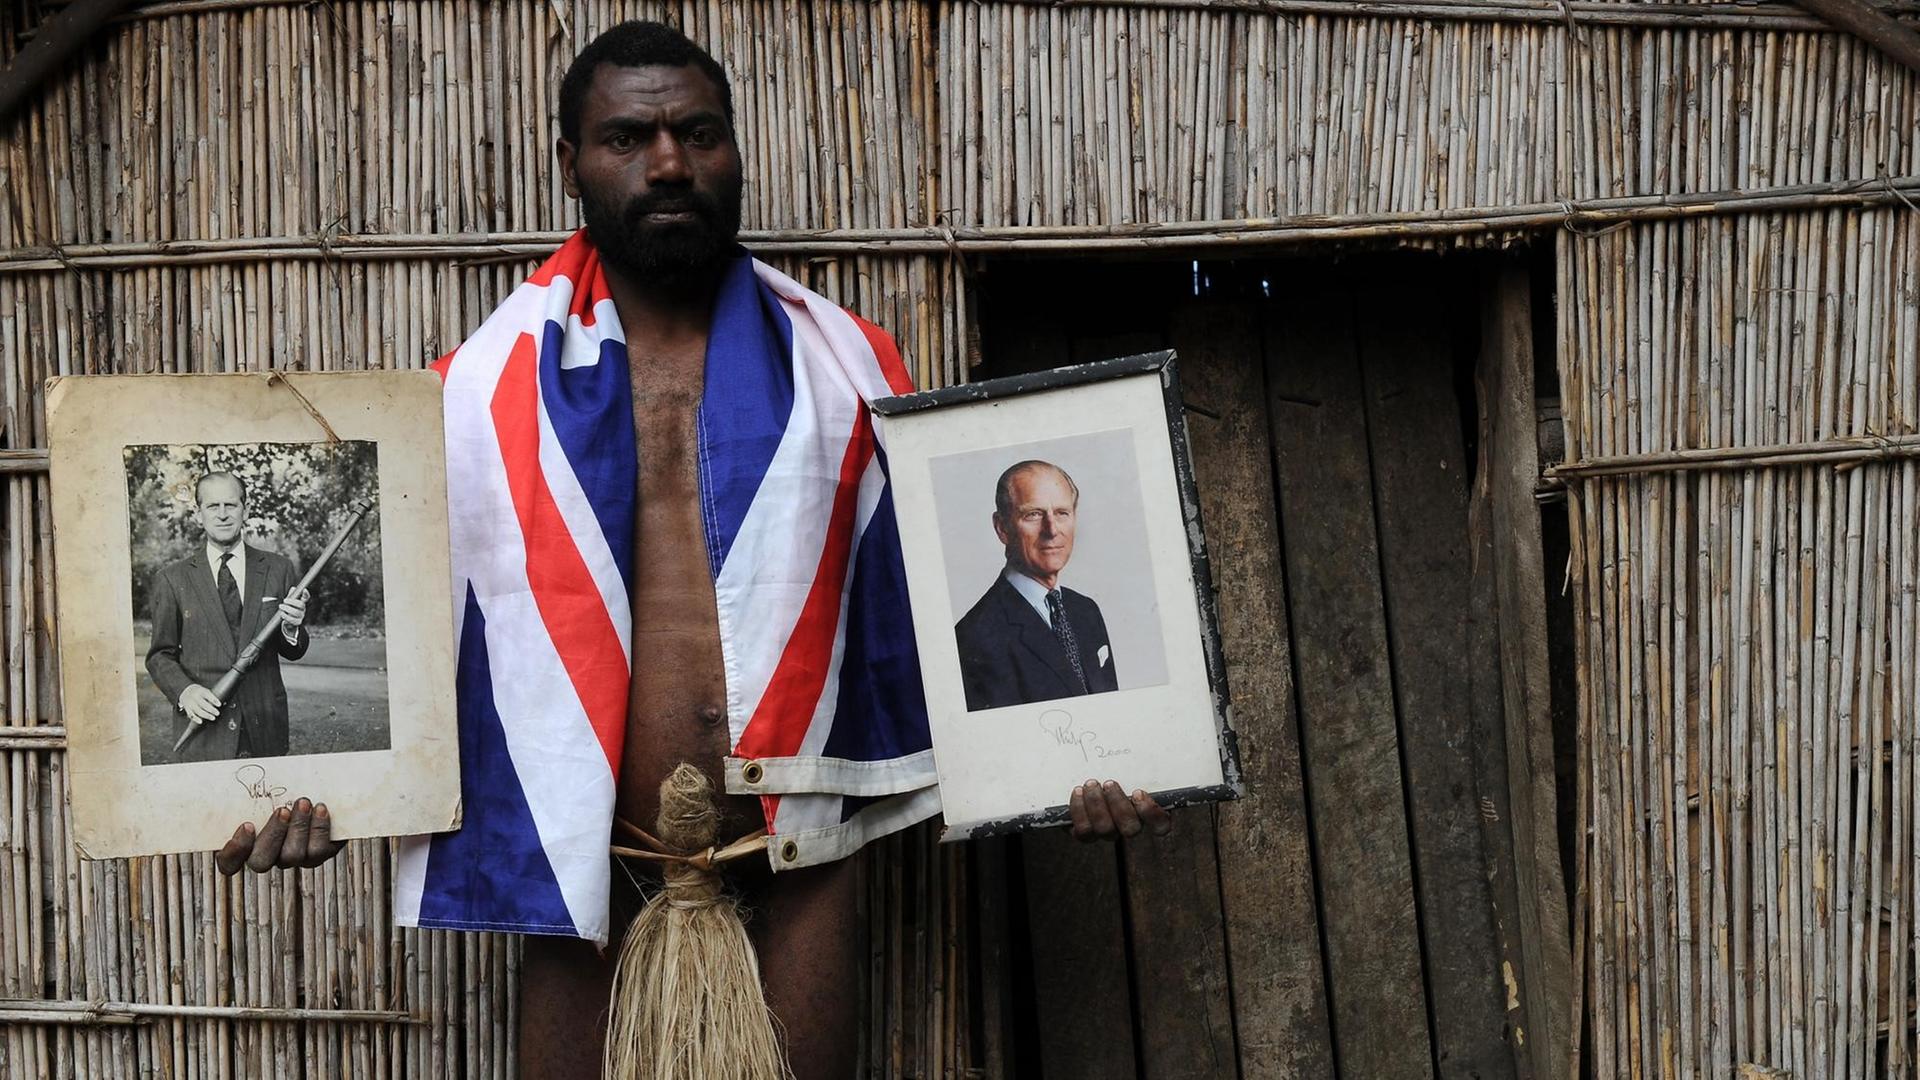 Chief Siko hält zwei Bilder seiner Gottheit Prince Philip in Händen. Bekleidet ist er mit einem Penisköcher und einem Union Jack. (Bild: Torsten Blackwood / AFP)